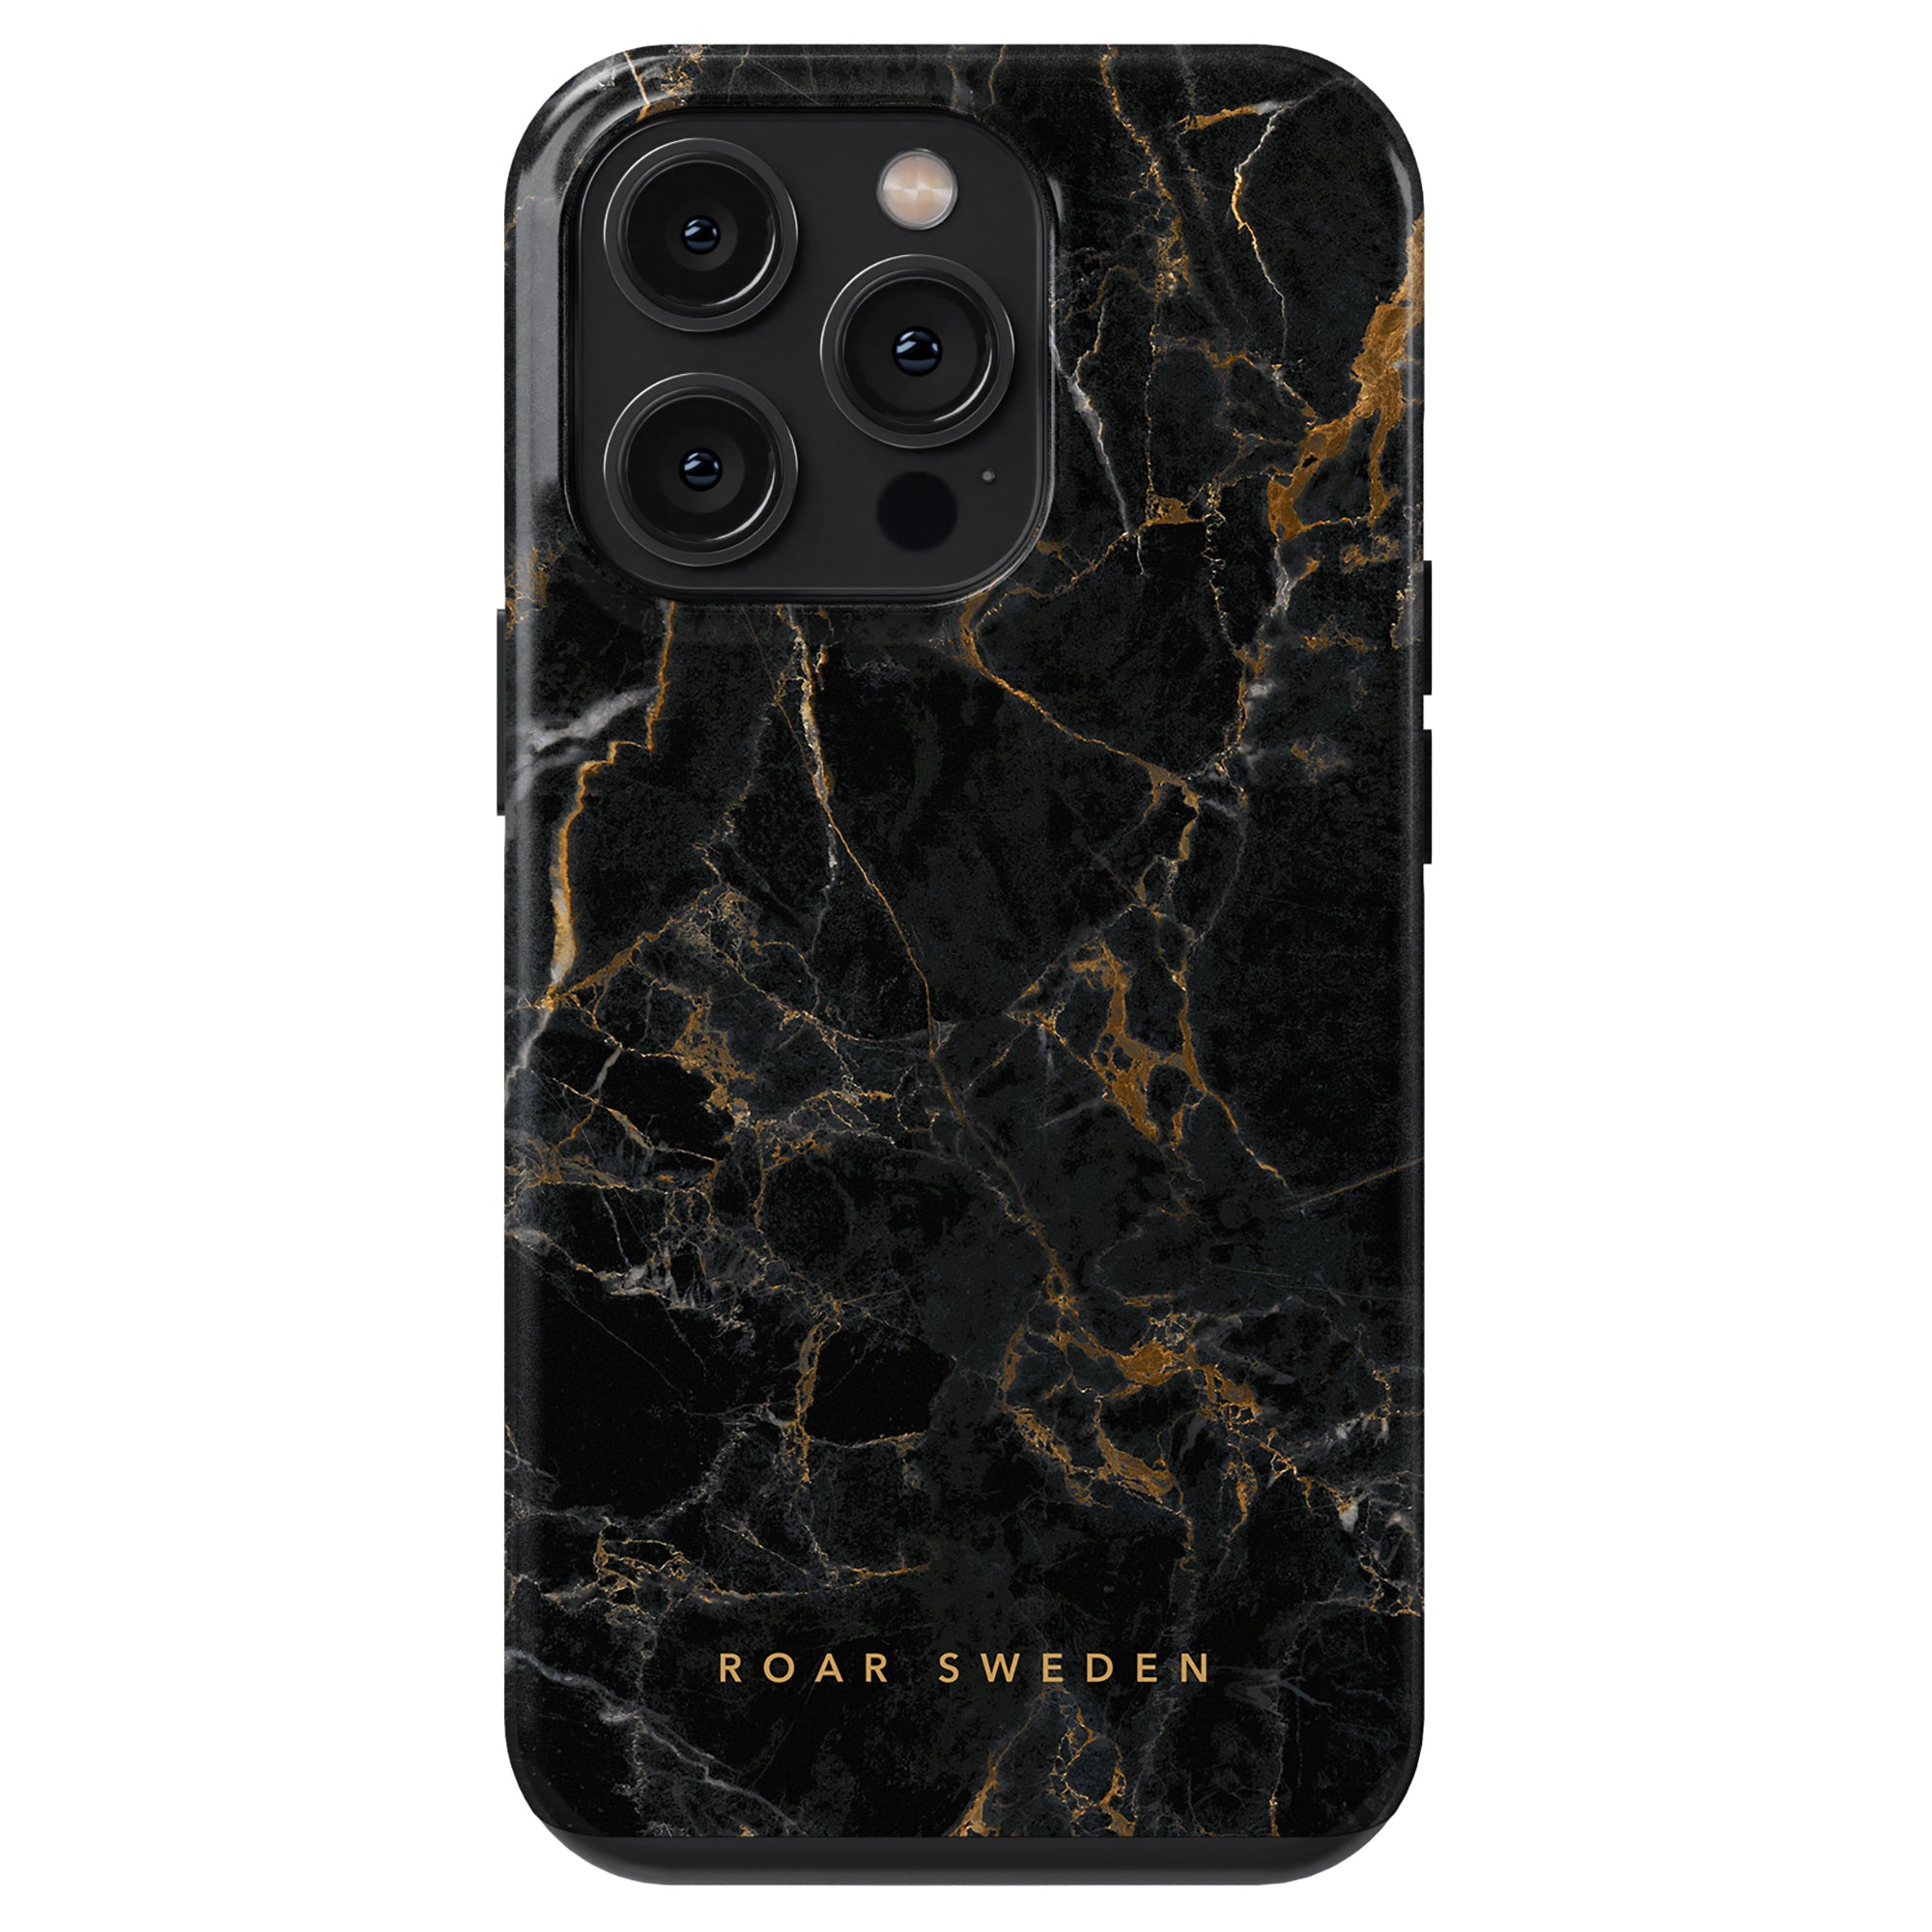 Förbättra din iPhone 11 Pro med ett fantastiskt svart och guld Portoro - Tough Case som vackert kombinerar en modern design och naturens elegans.